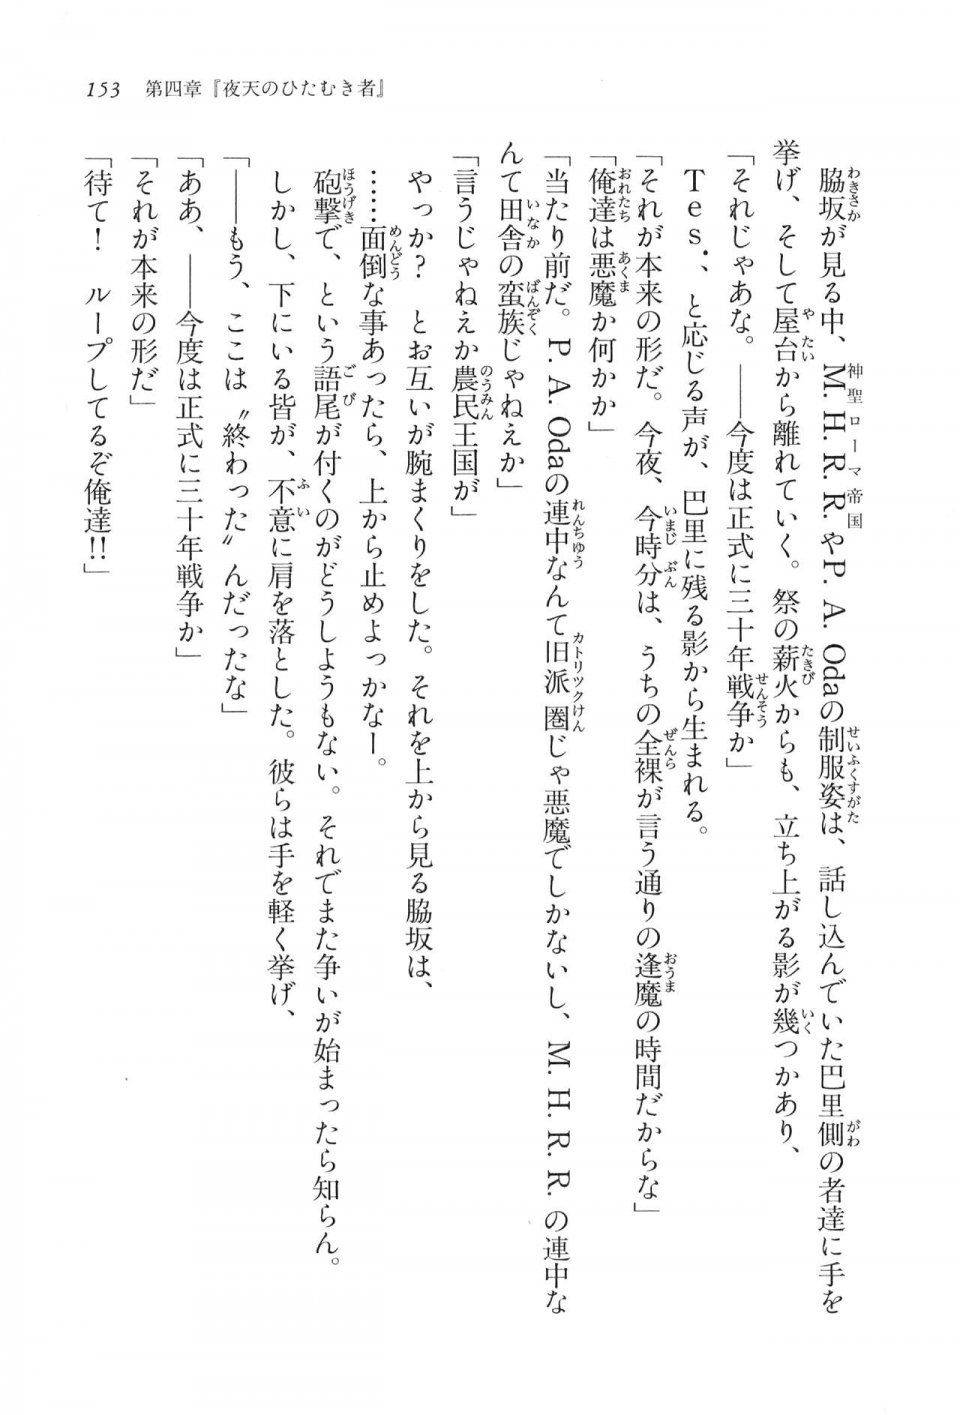 Kyoukai Senjou no Horizon LN Vol 16(7A) - Photo #153